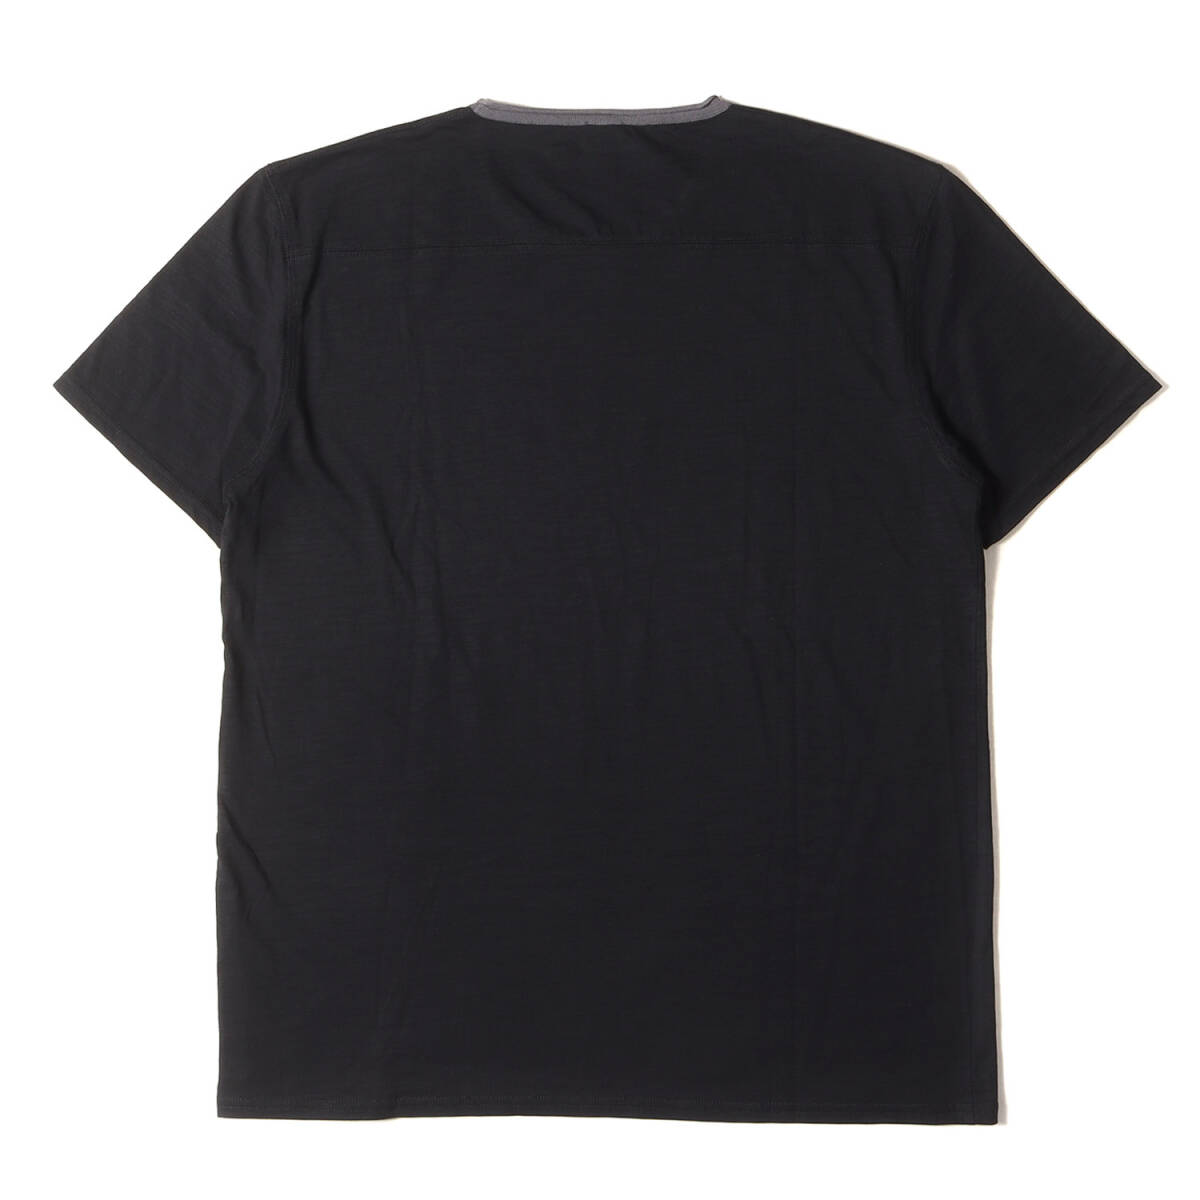 美品 HUGO BOSS ヒューゴボス Tシャツ サイズ:XL コットンスラブ プレーン クルーネック 半袖Tシャツ REGULAR FIT ブラック 黒 トップス_画像2